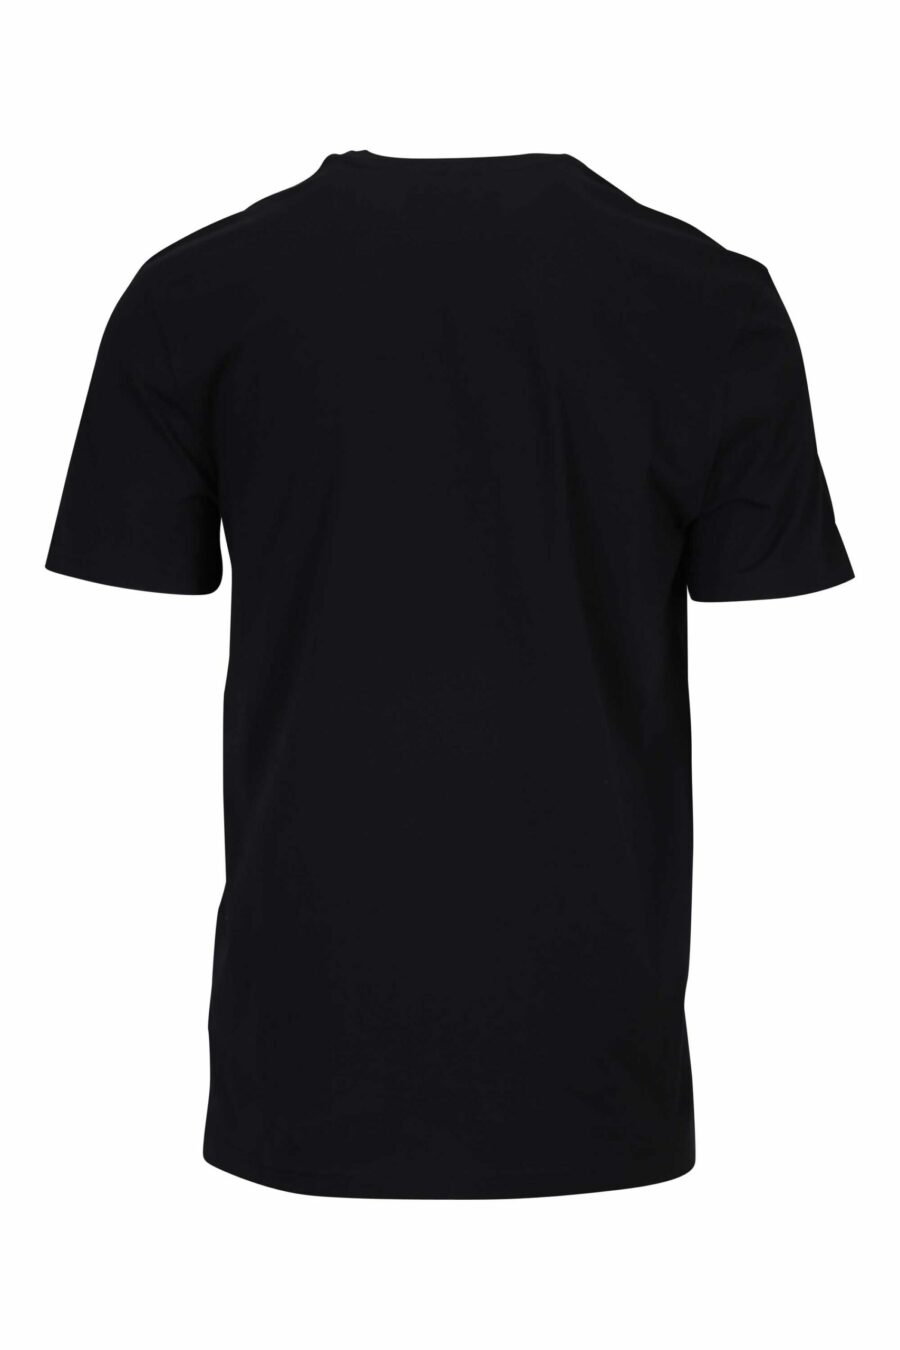 T-shirt preta com mini logótipo branco - 667113394862 1 à escala